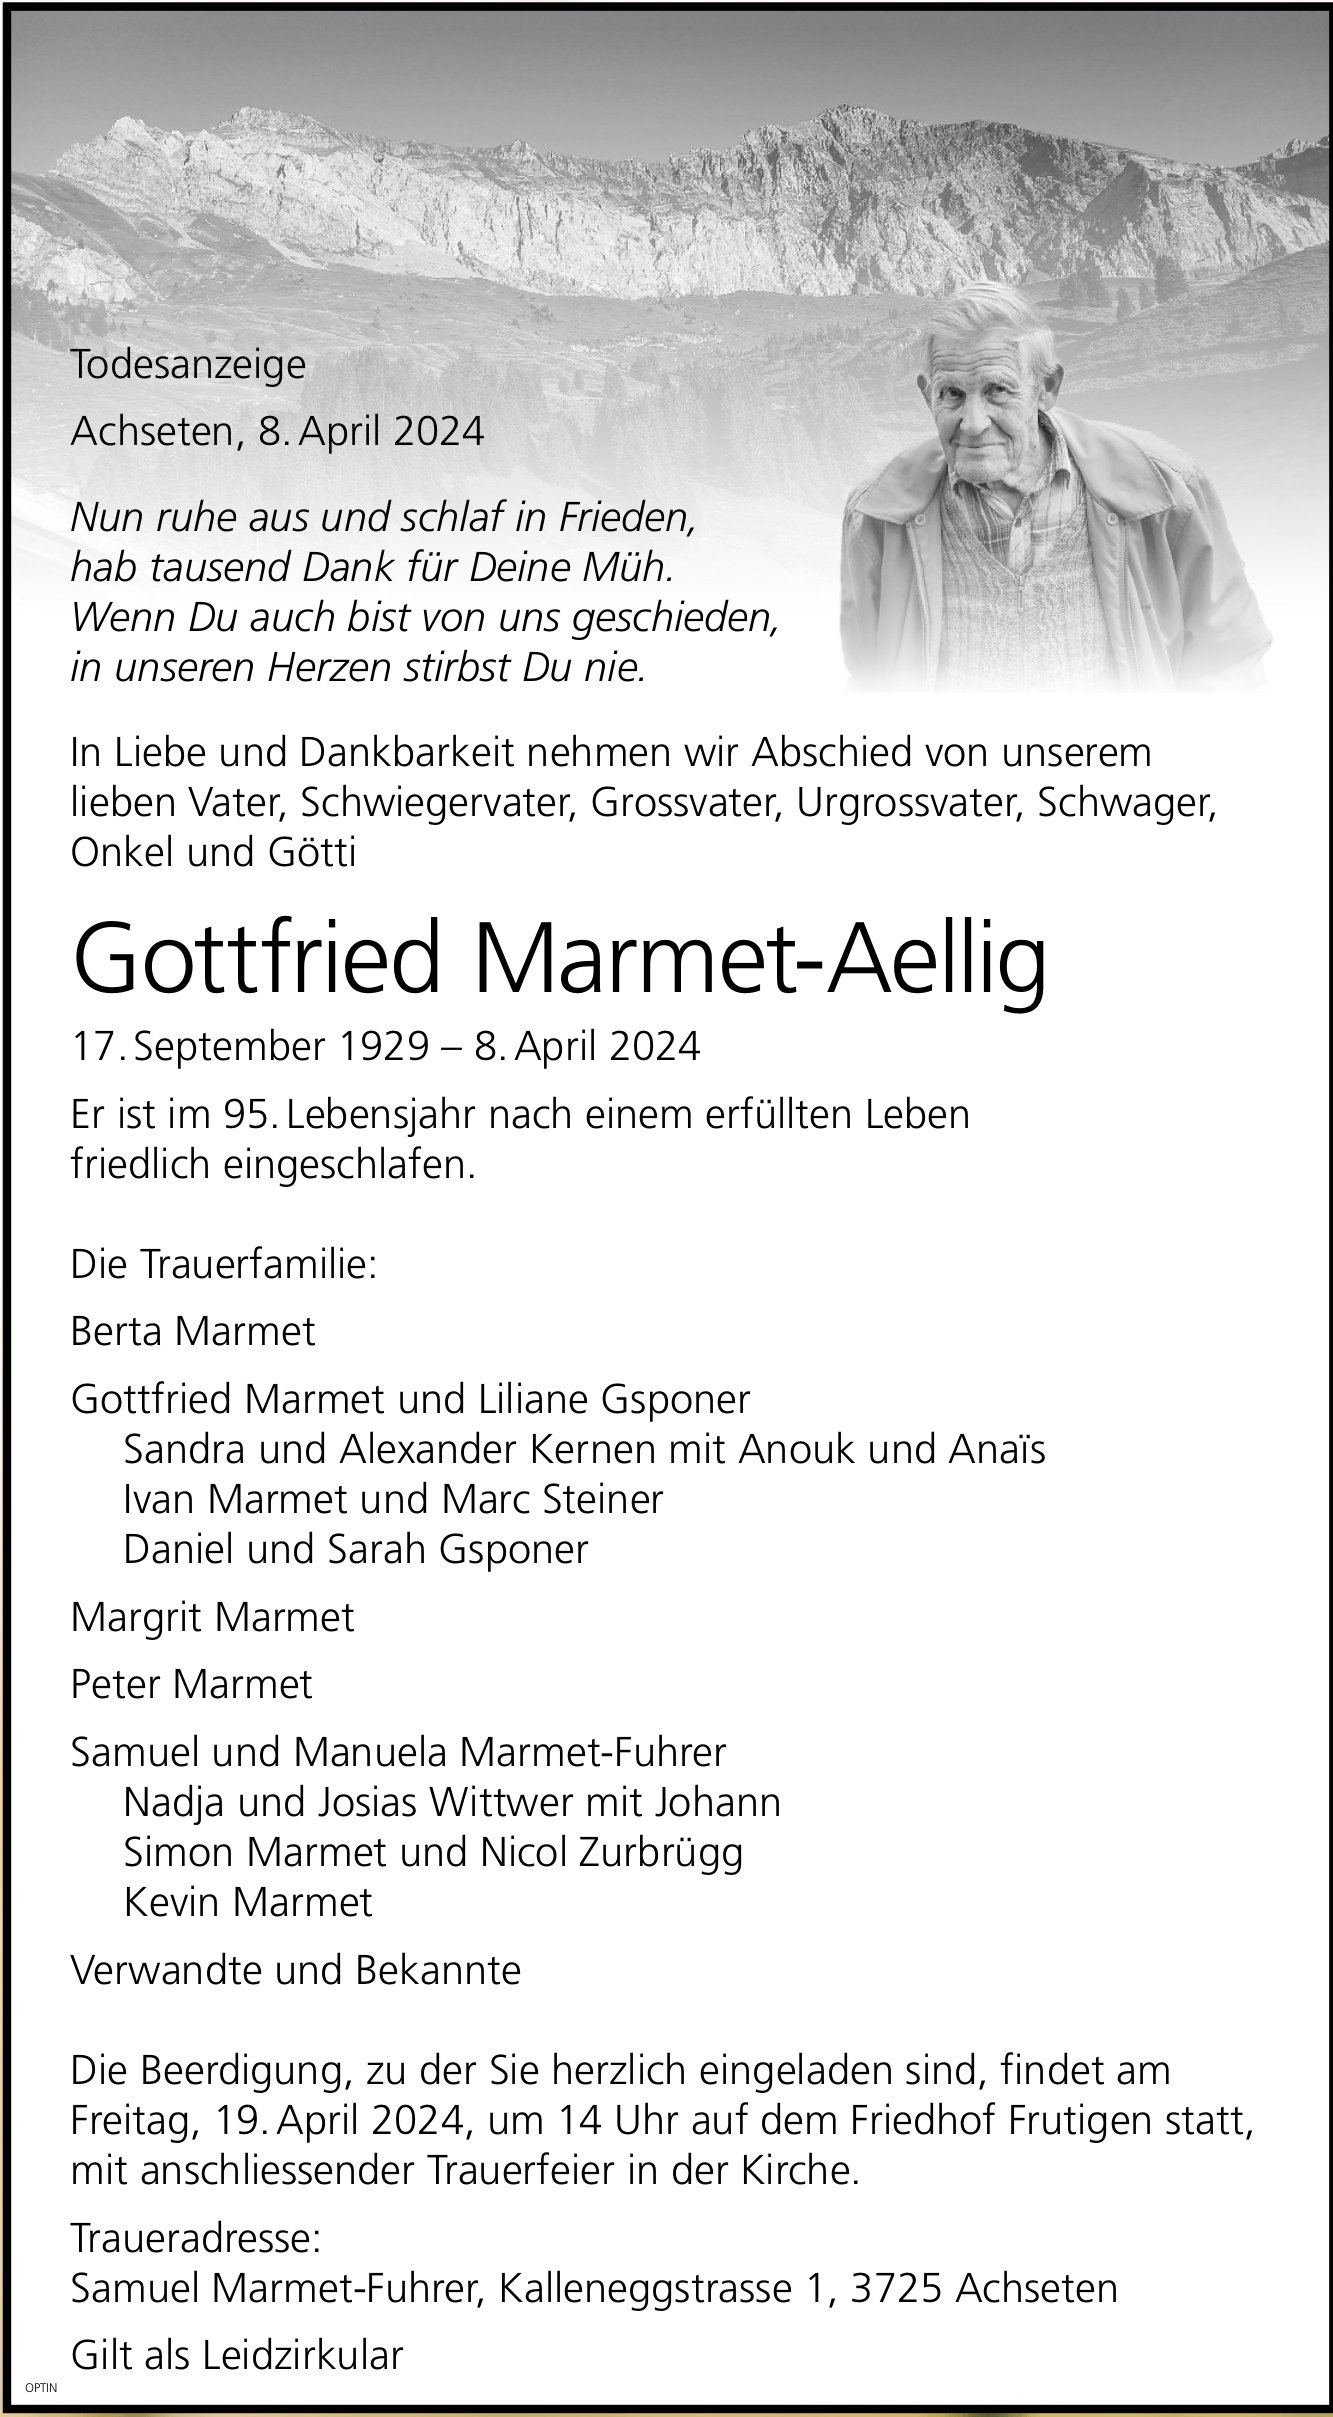 Gottfried Marmet-Aellig, April 2024 / TA